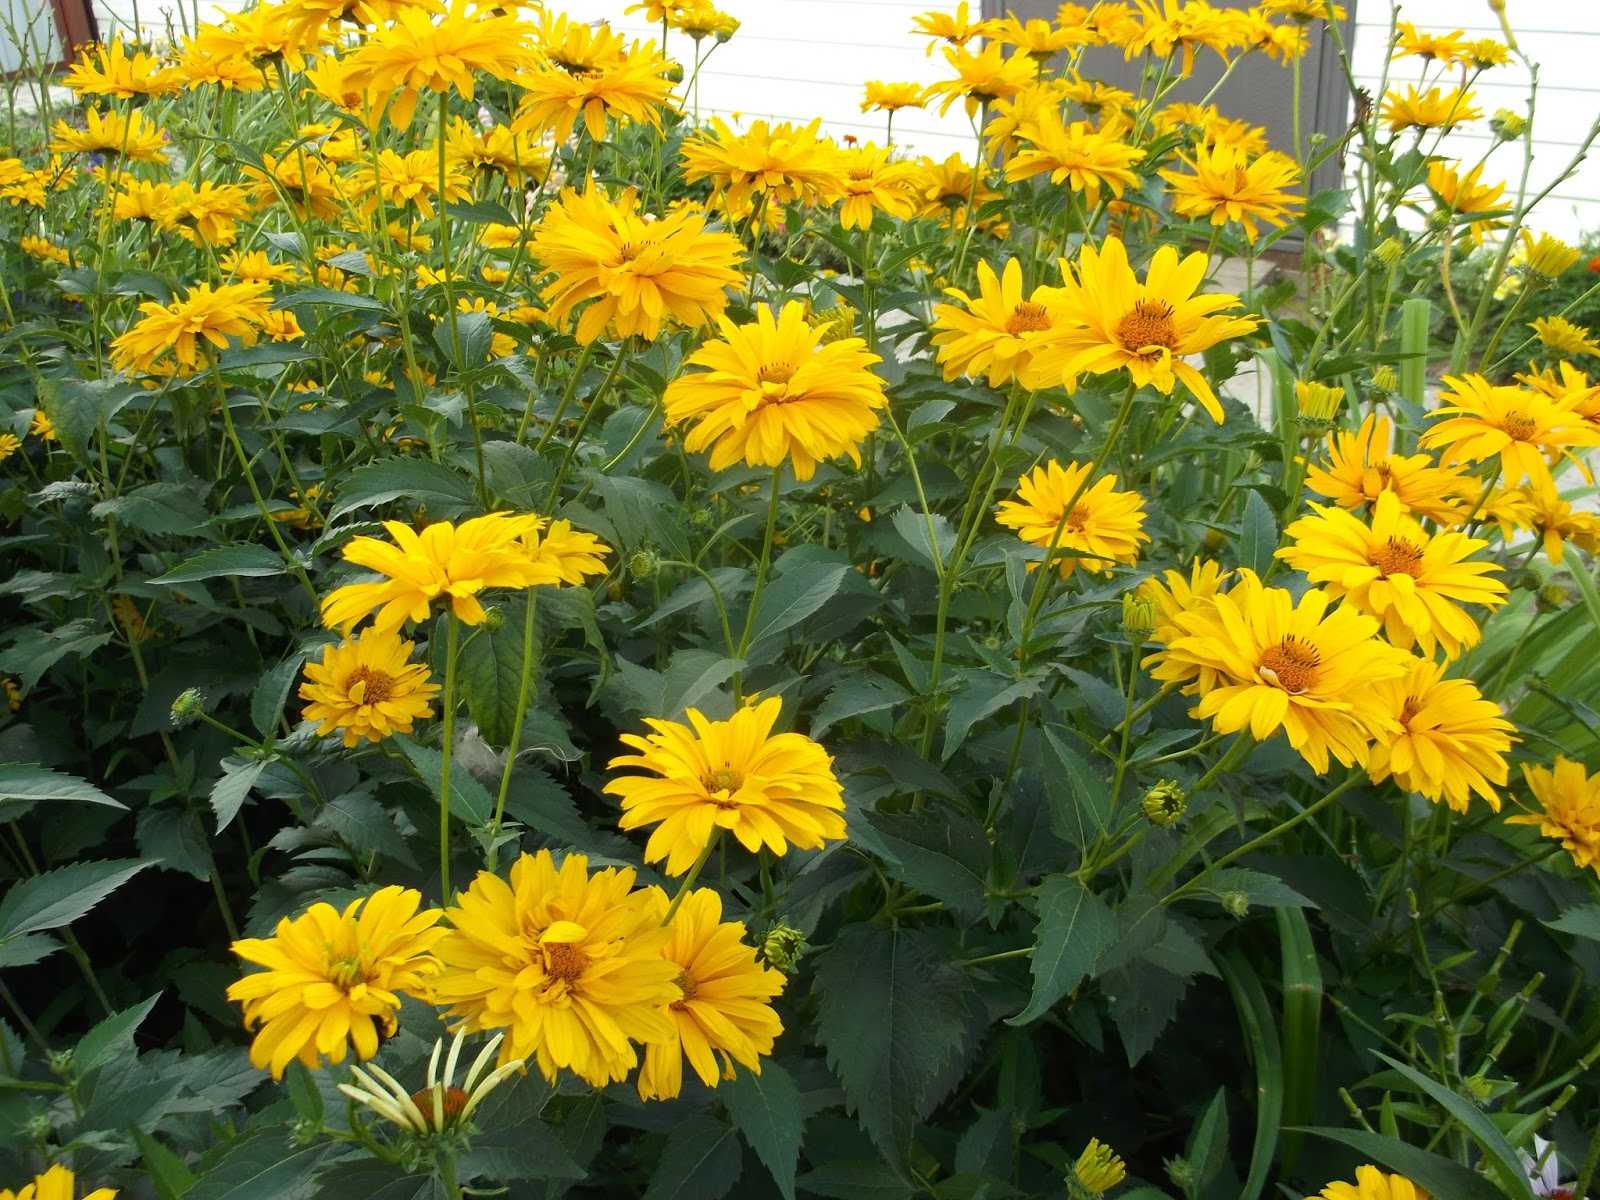 Гелиопсис многолетний – солнечный цветок для сада